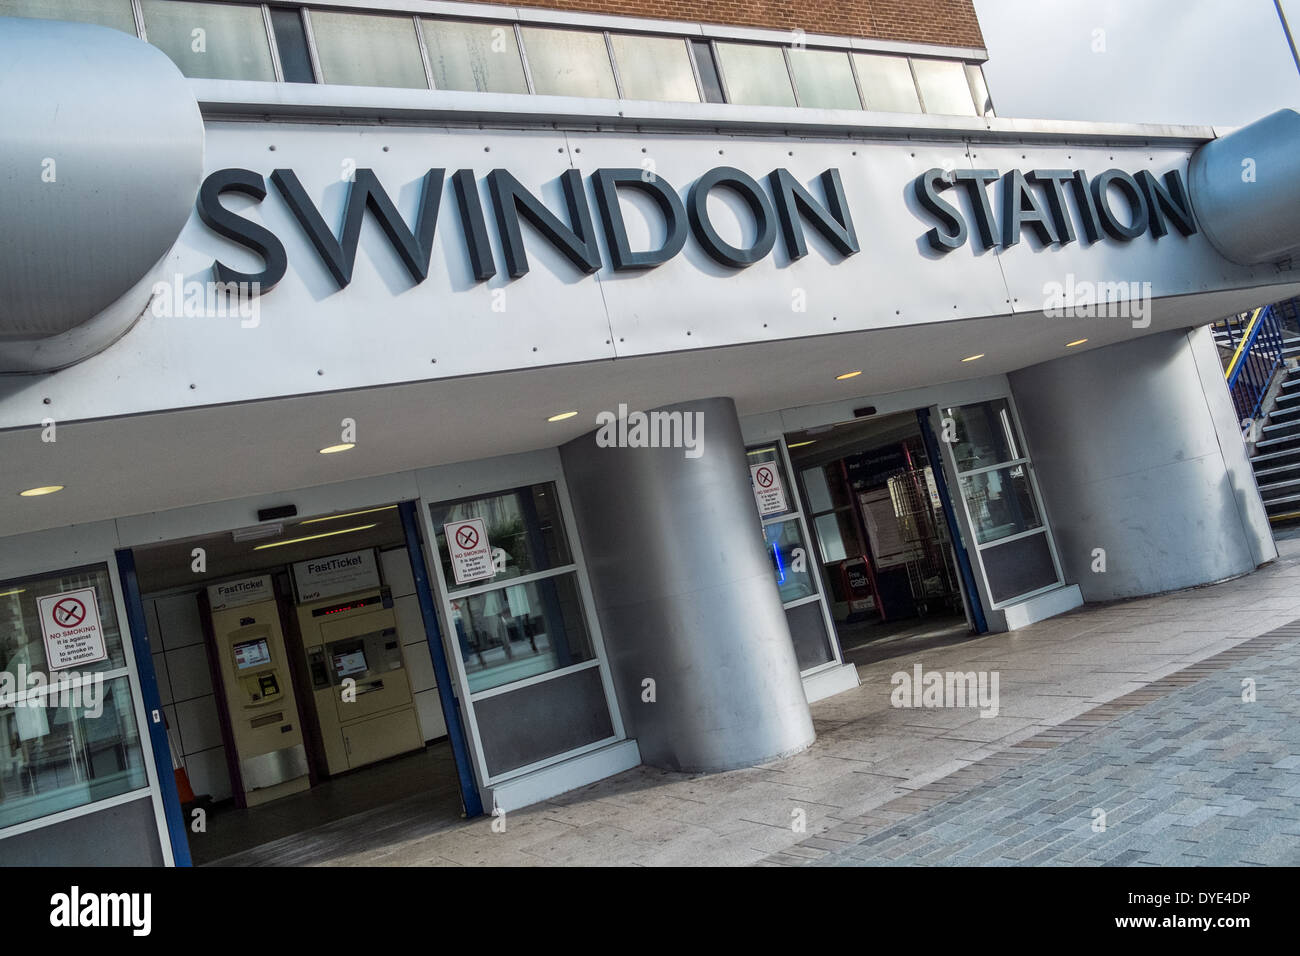 El signo & entrada a la estación de ferrocarril en Swindon, Wiltshire, UK Foto de stock